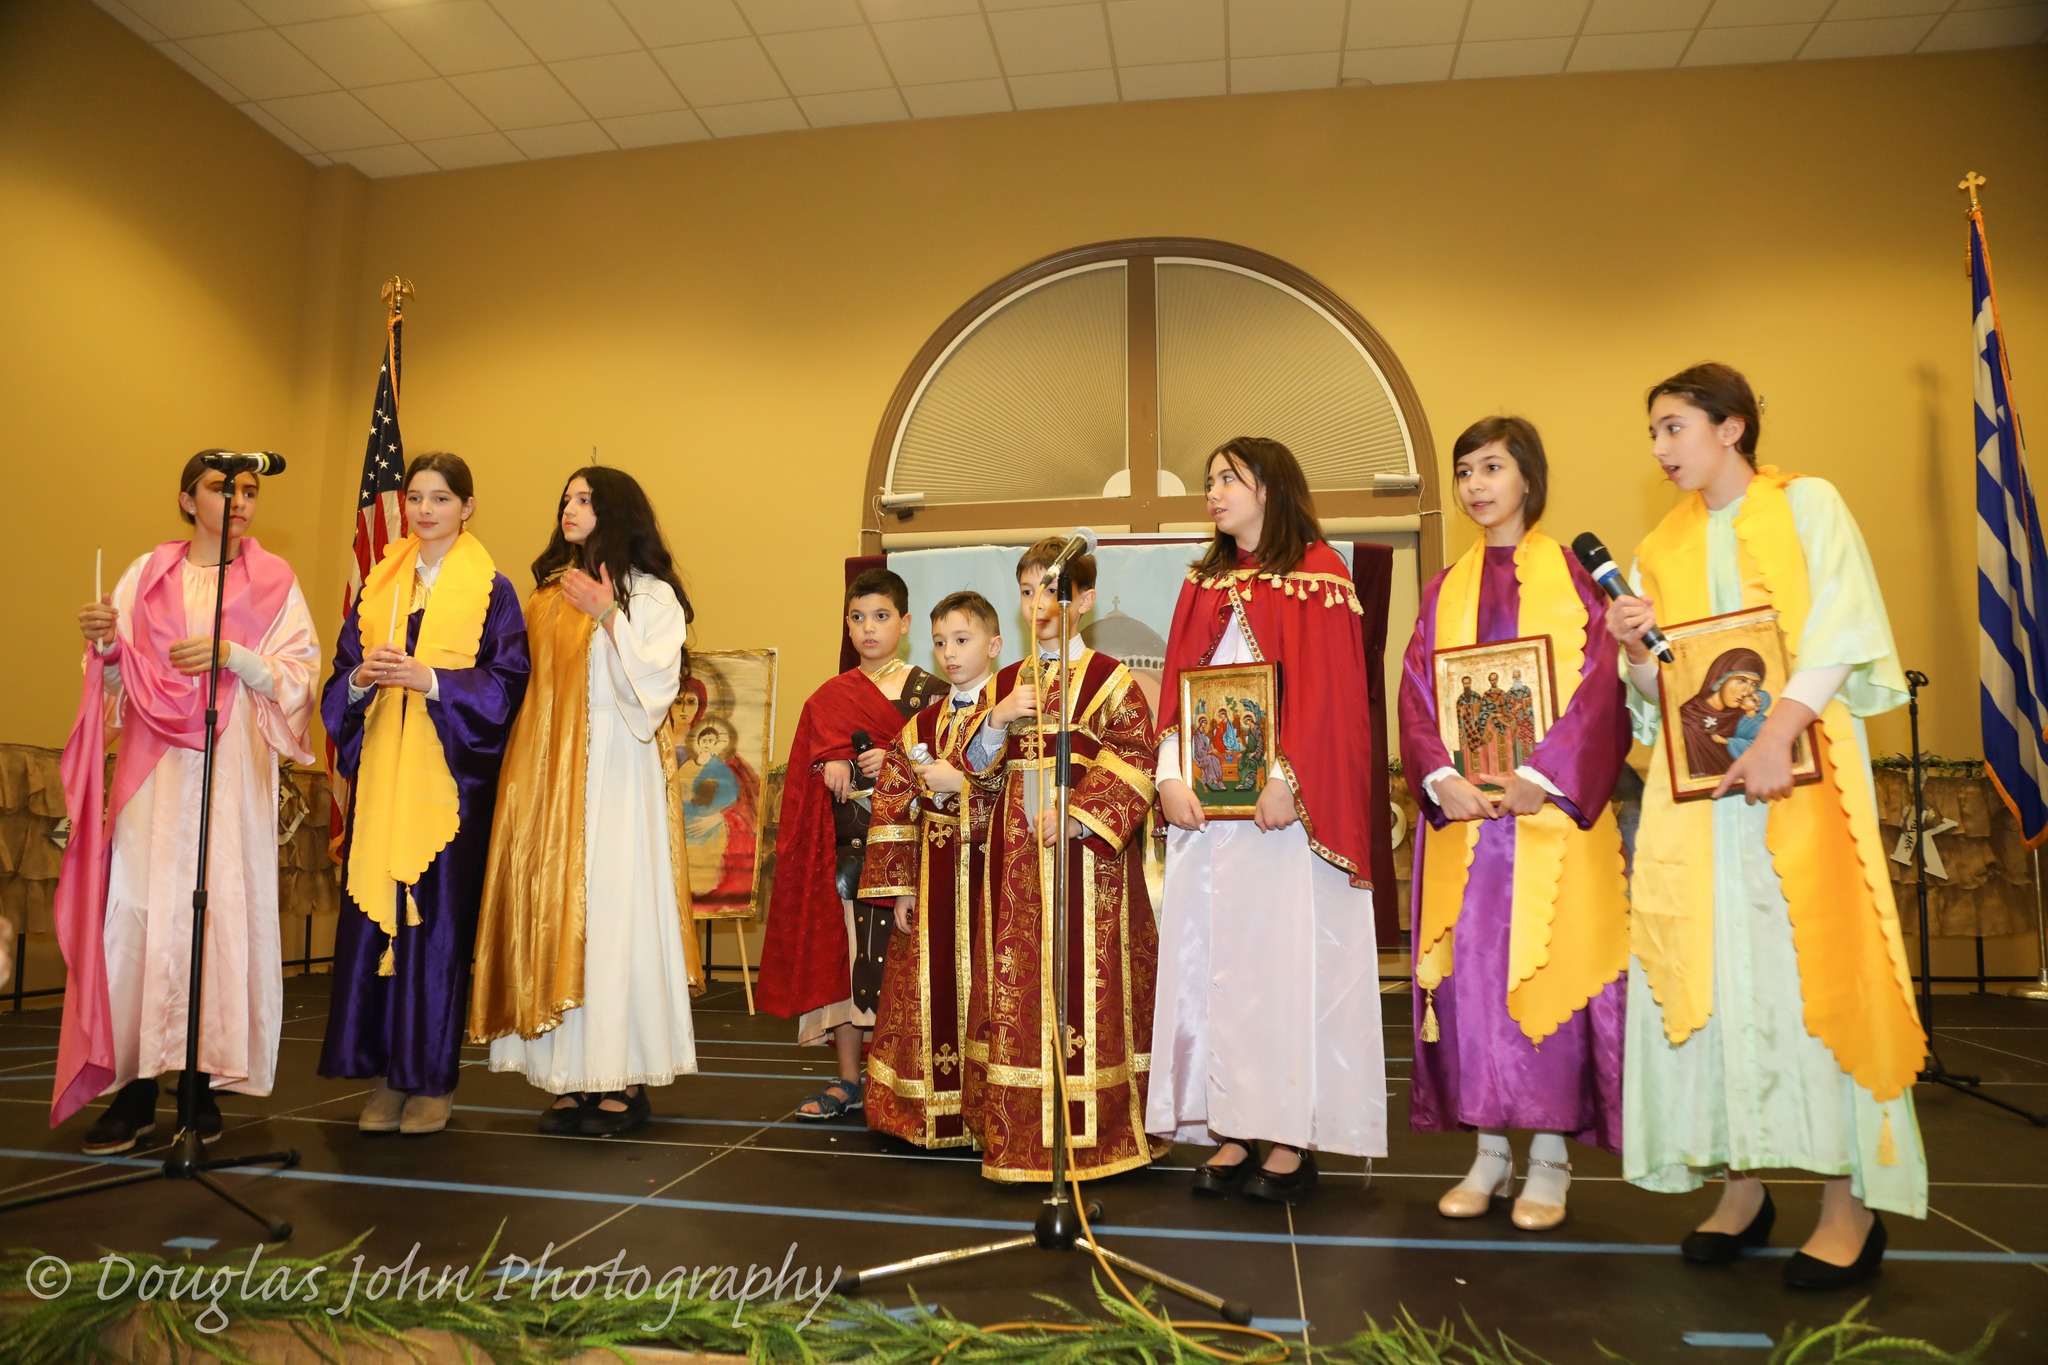 Ο Εορτασμός της Ημέρας των Τριών Ιεραρχών & προστατών των Ελληνικών Γραμμάτων στην Μητρόπολη Νέας Ιερσέης 